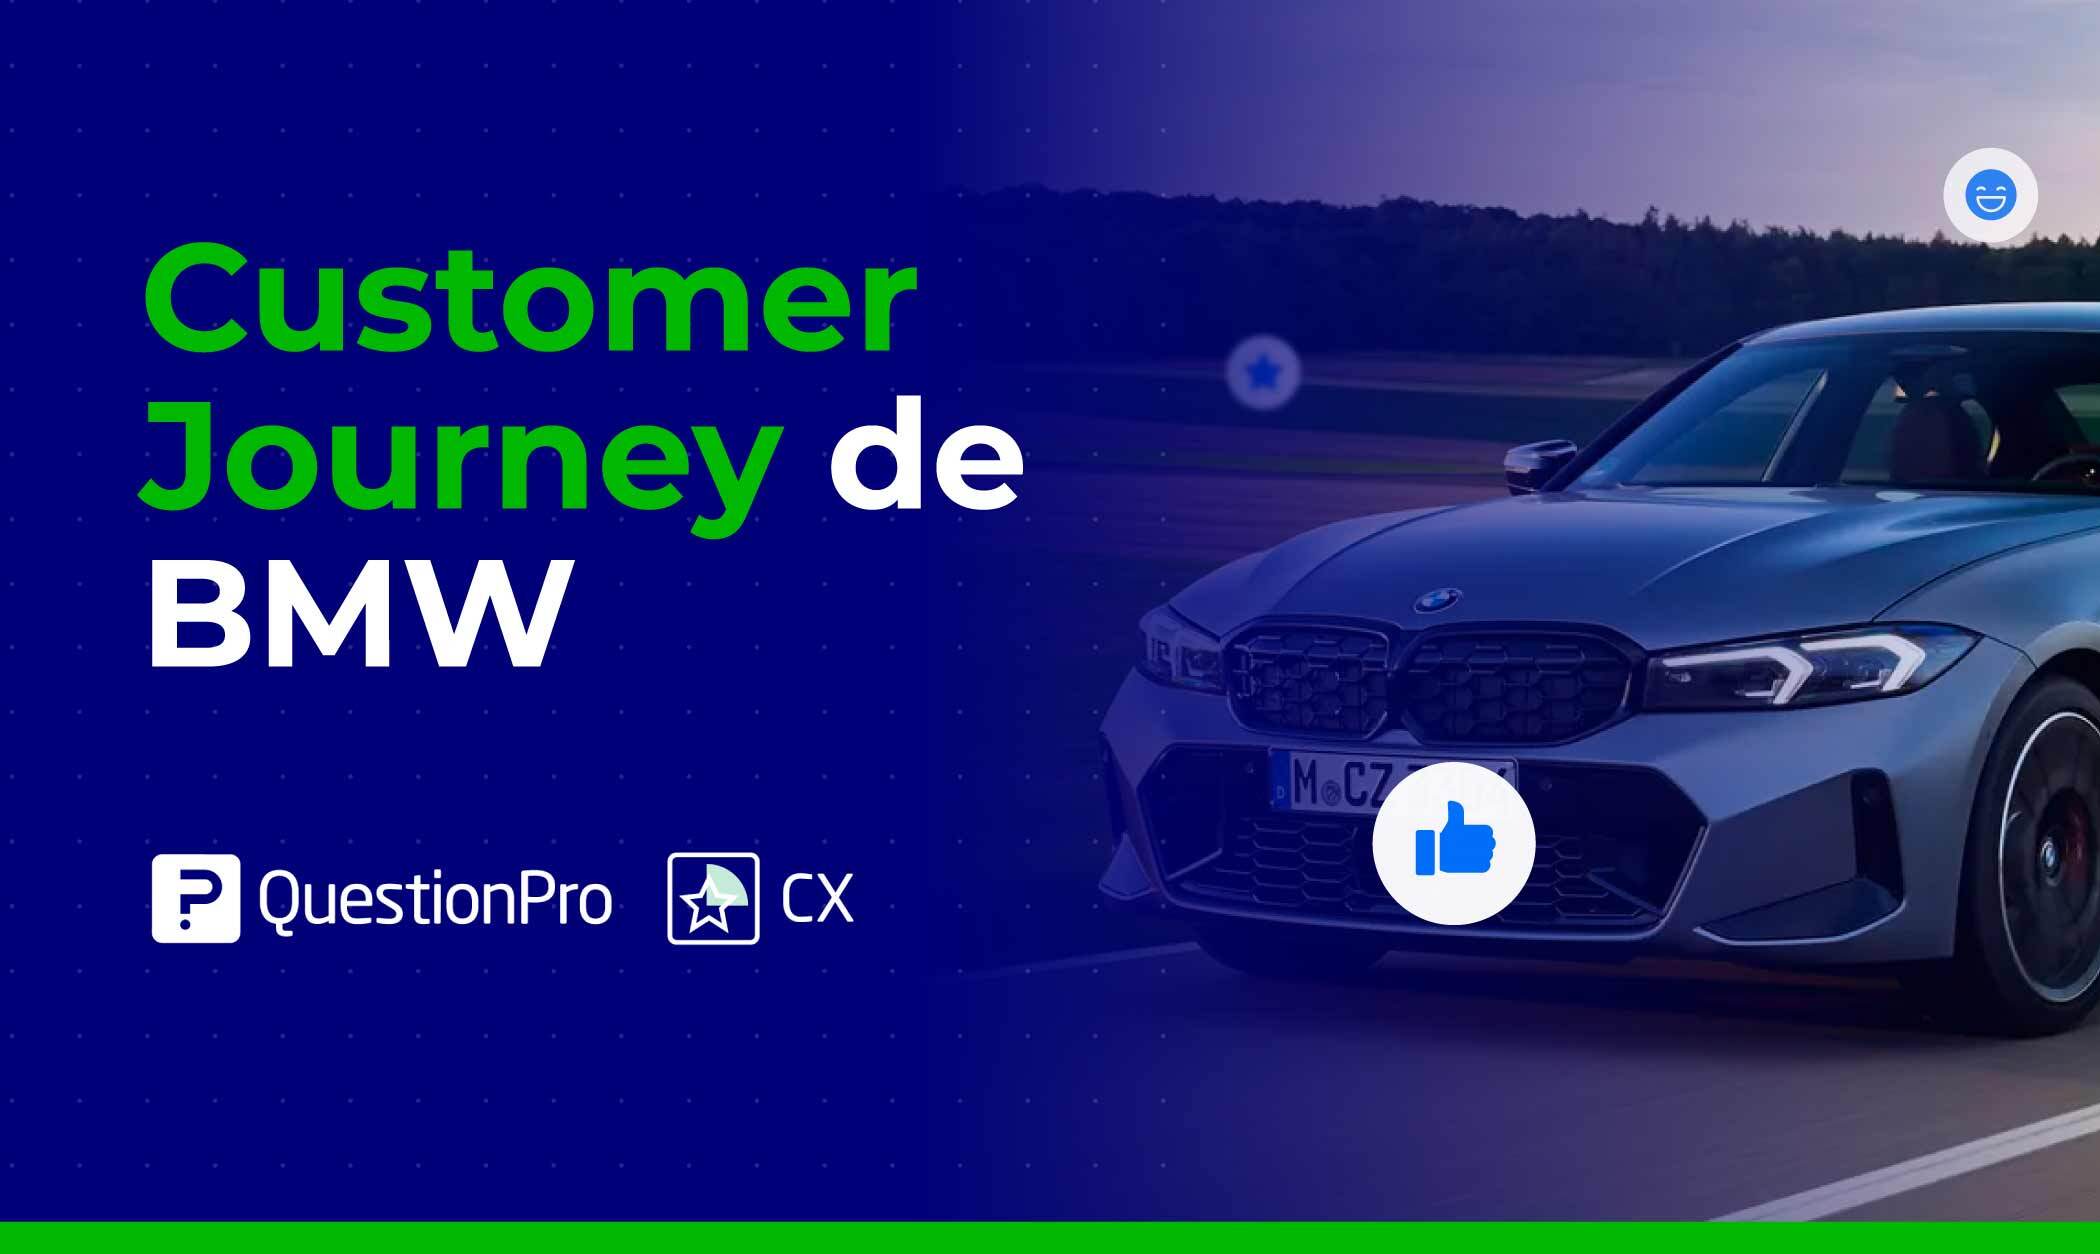 Customer journey de BMW